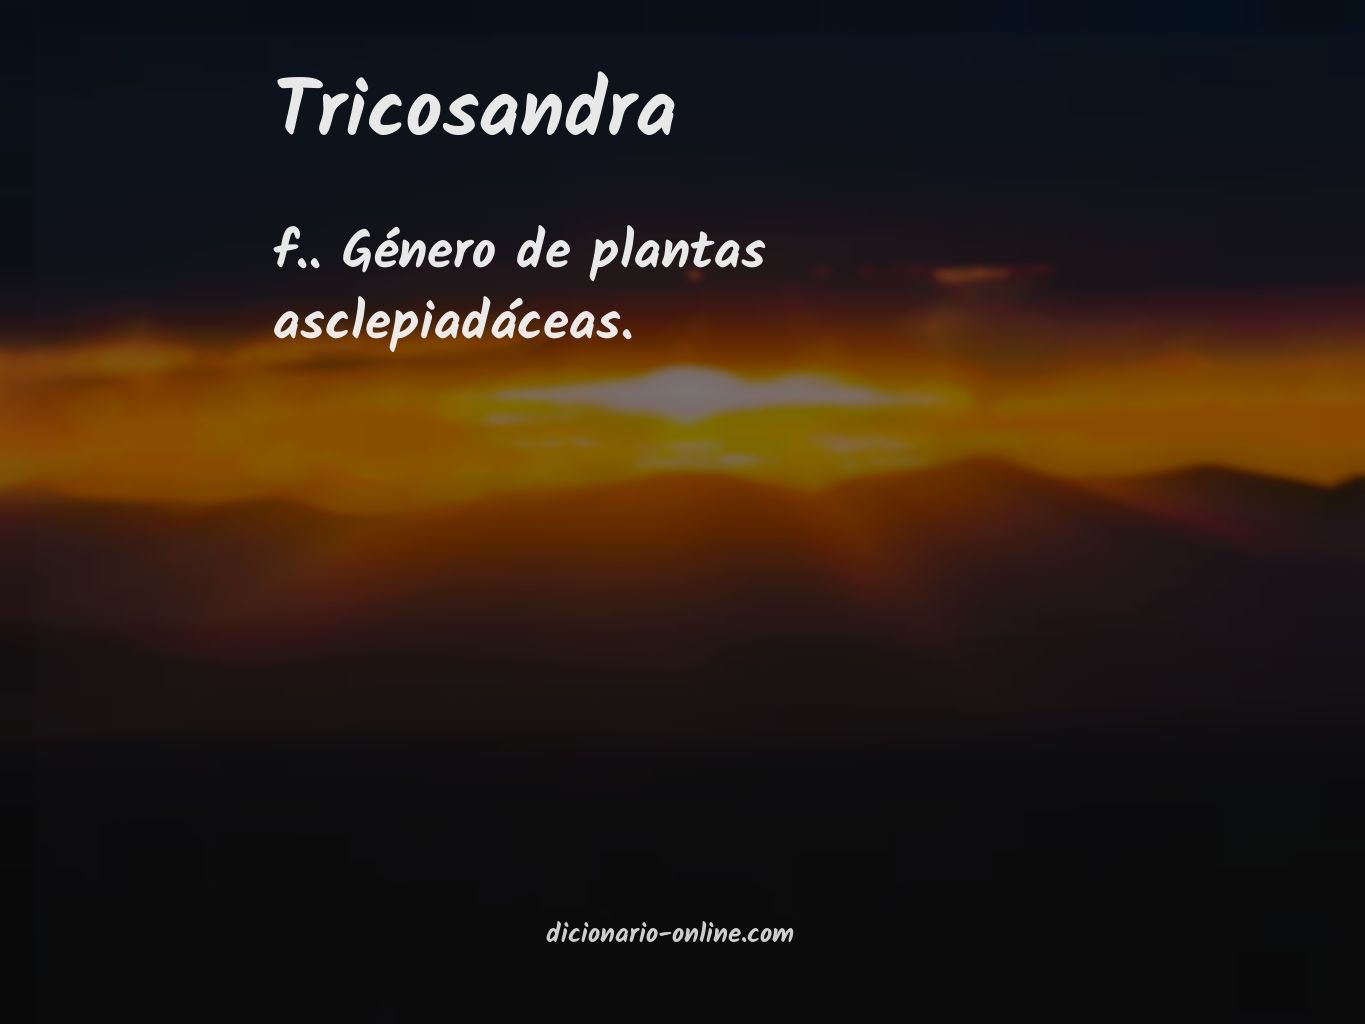 Significado de tricosandra